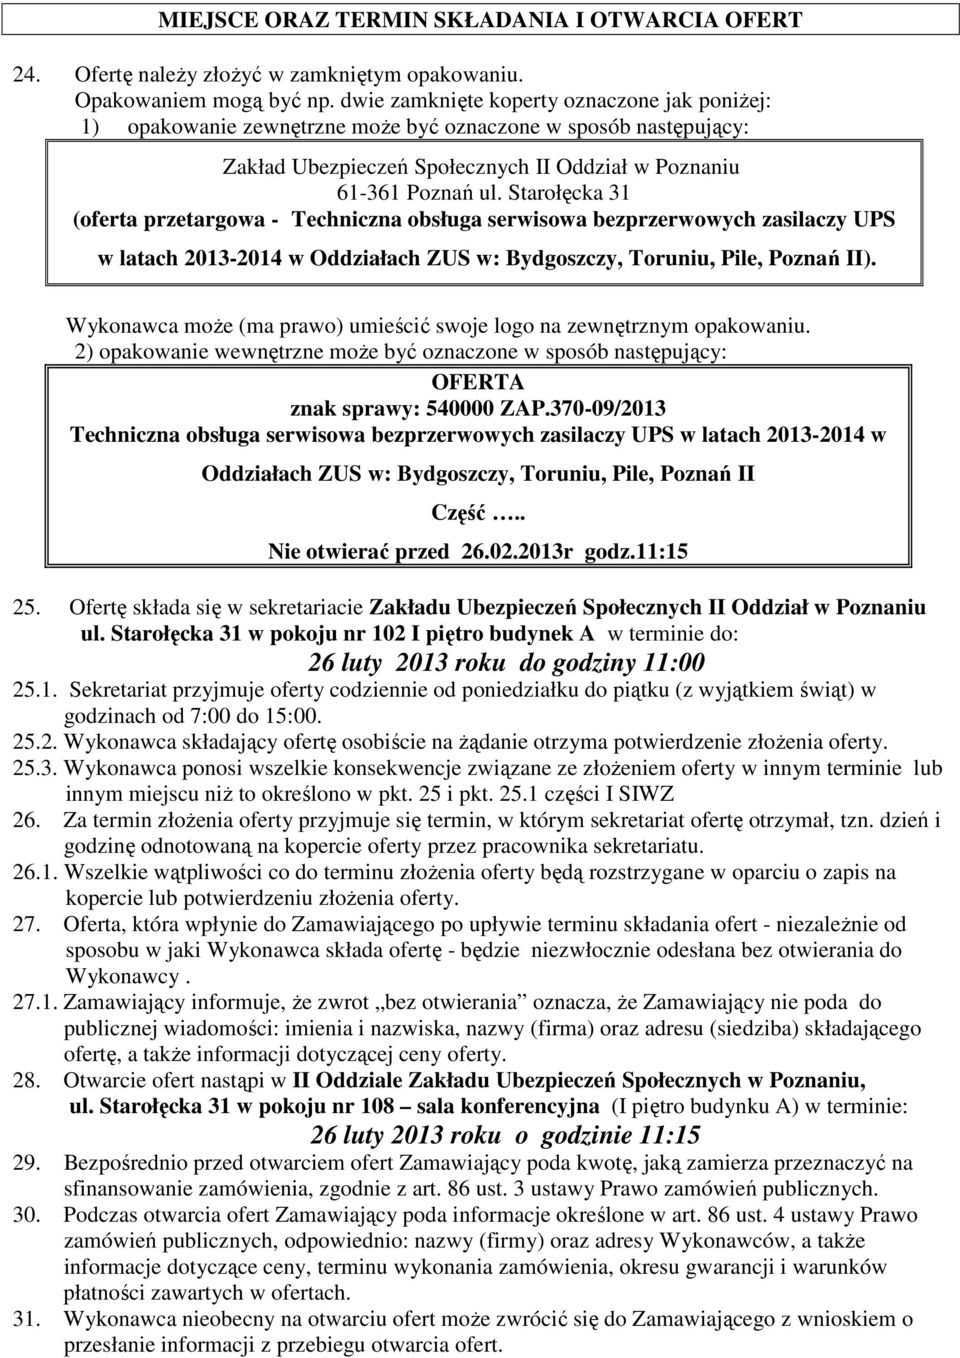 Starołęcka 31 (oferta przetargowa - Techniczna obsługa serwisowa bezprzerwowych zasilaczy UPS w latach 2013-2014 w Oddziałach ZUS w: Bydgoszczy, Toruniu, Pile, Poznań II).